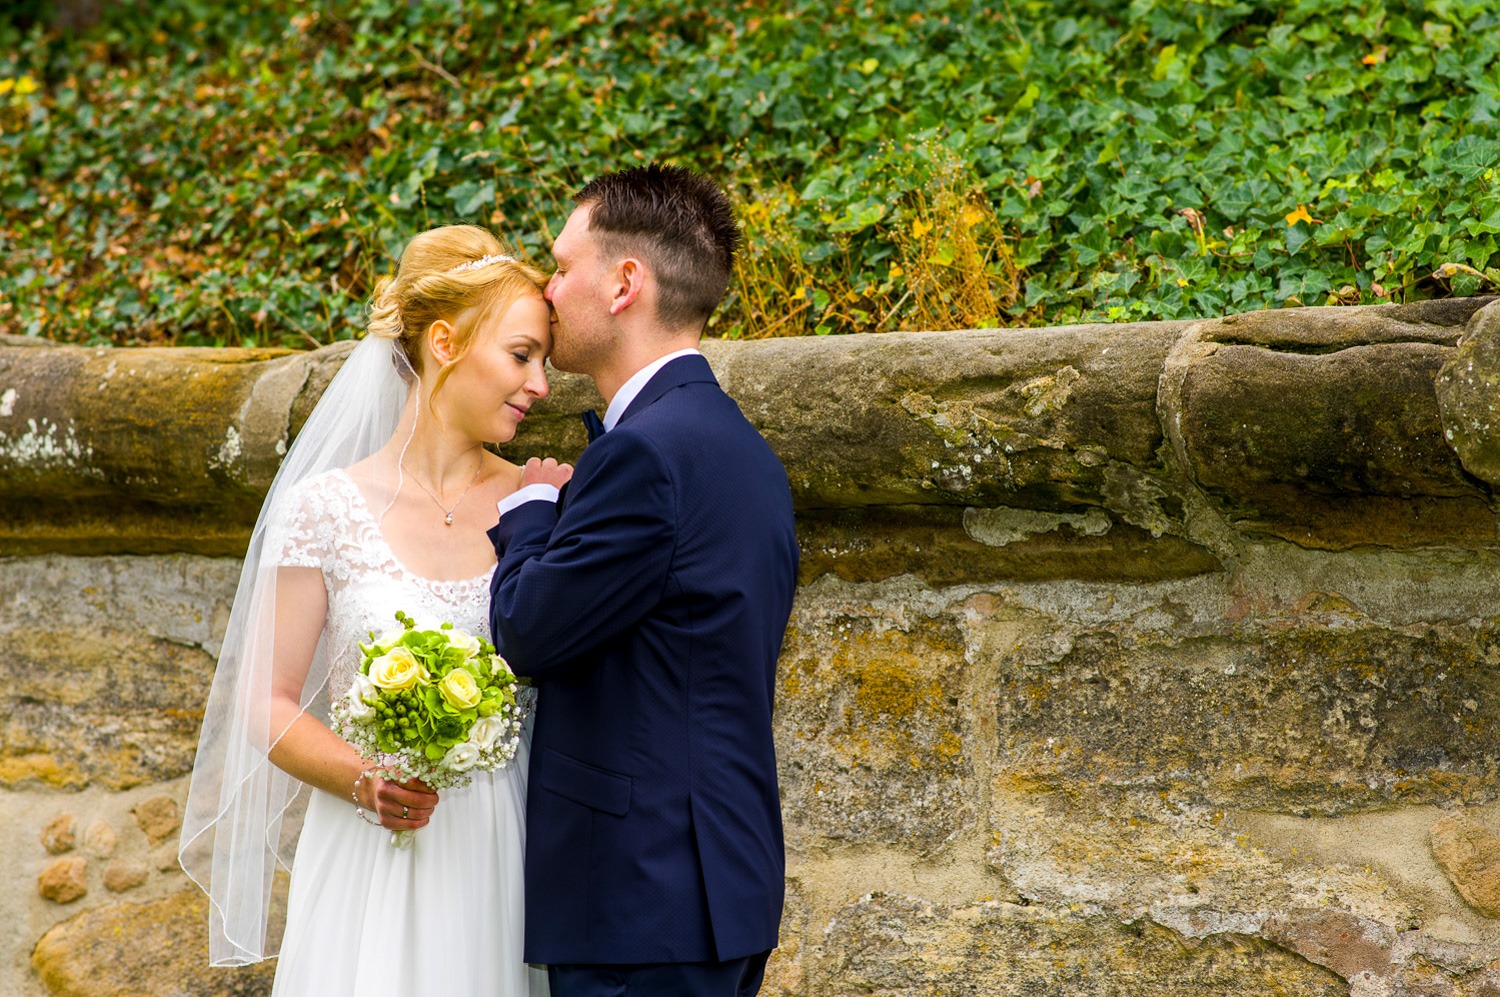 Hochzeitsfotograf Erlangen-Der Bräutigam küsst seine Braut liebevoll auf die Stirn. Im Hintergrund ist eine alte Steinmauer und etwas grün zu sehen